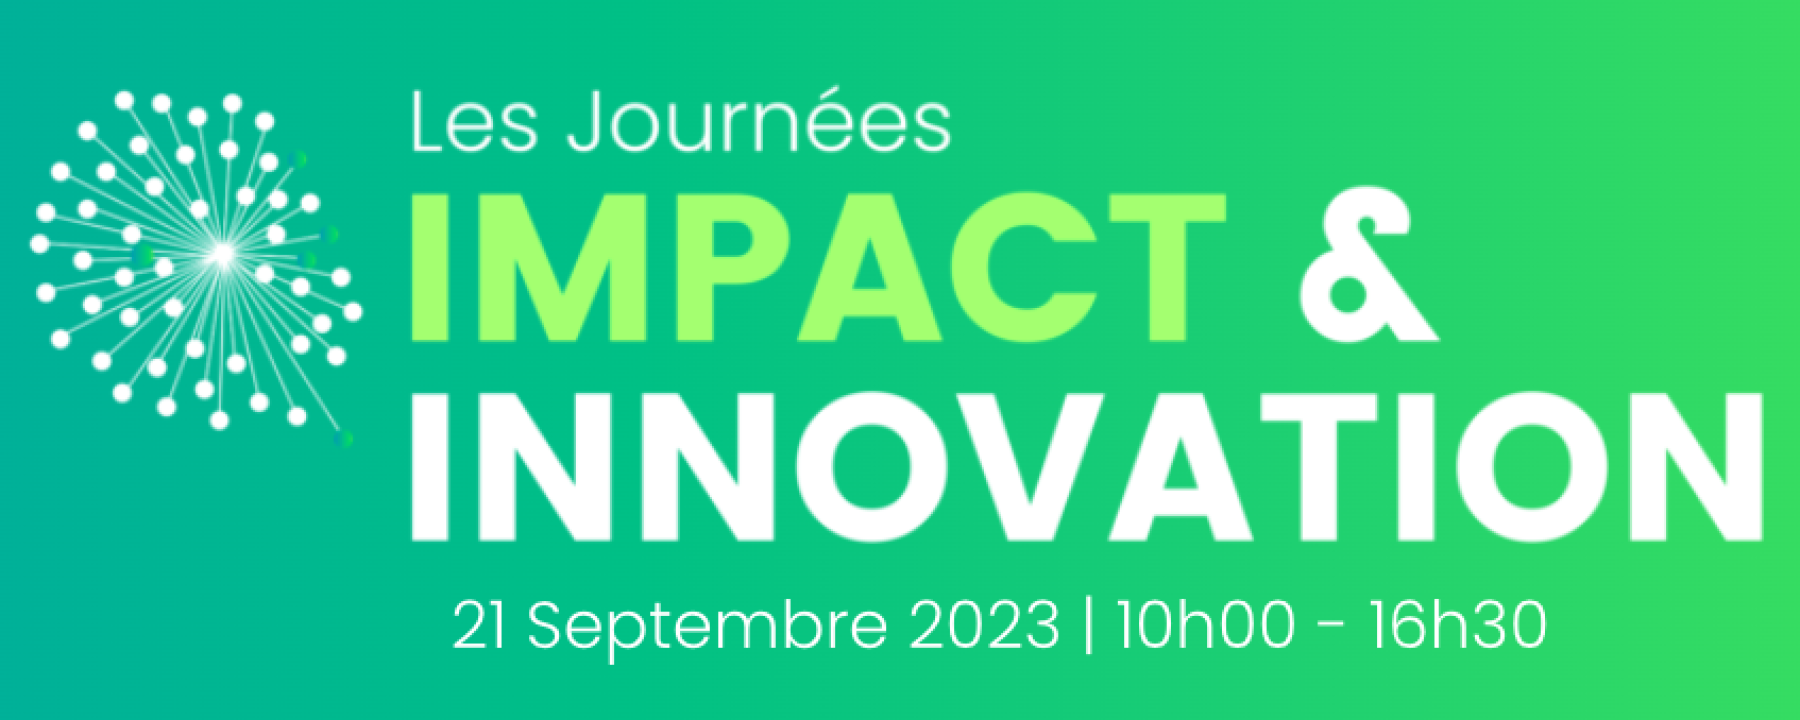 Les Journées Impact & Innovation 2023